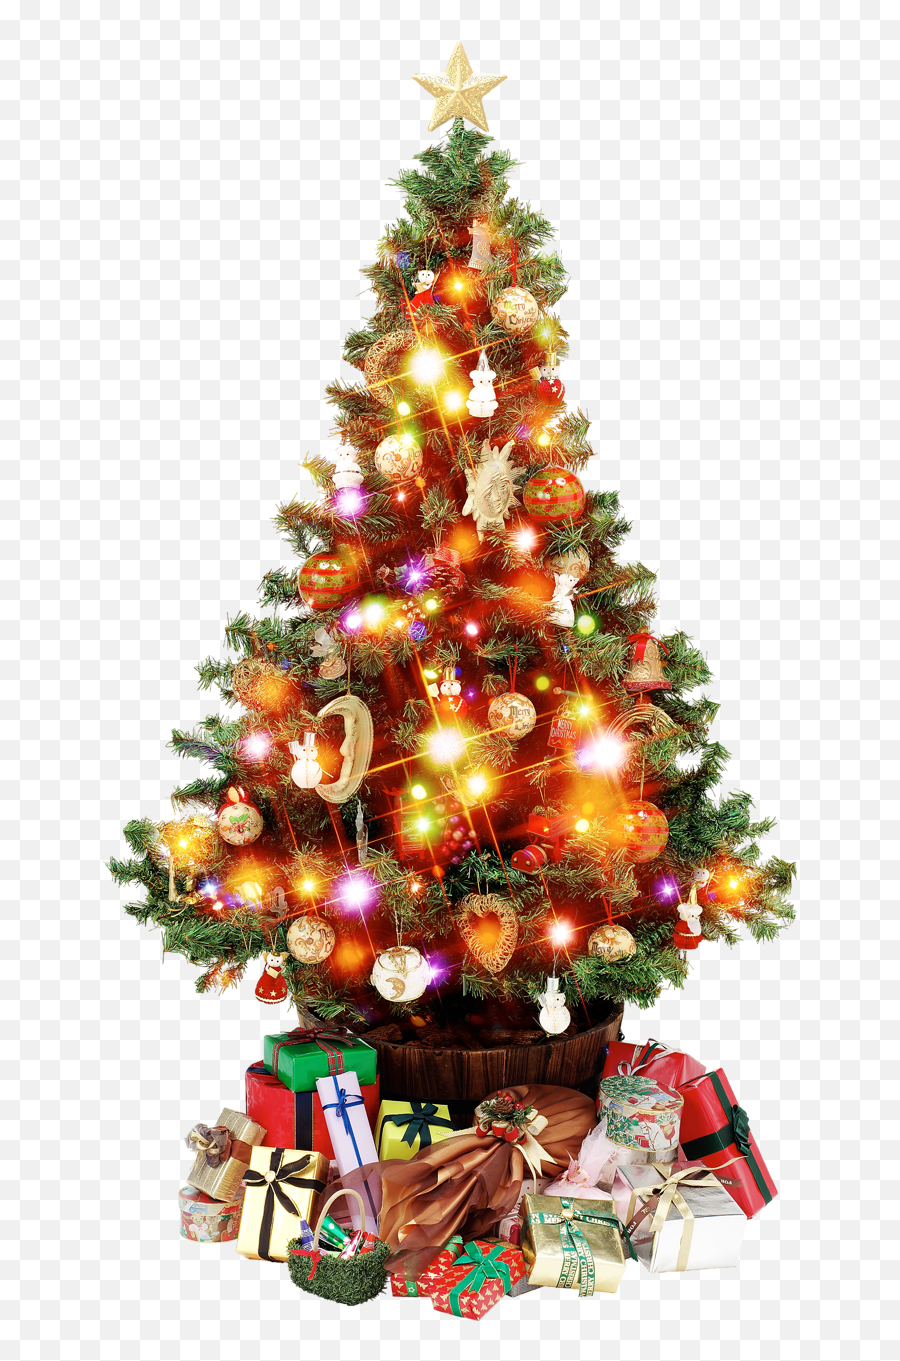 Erasmus Christmas By Ticsanisidro On Genially - Christmas Tree Psd Emoji,What Happened To The Christmas Tree Emoji